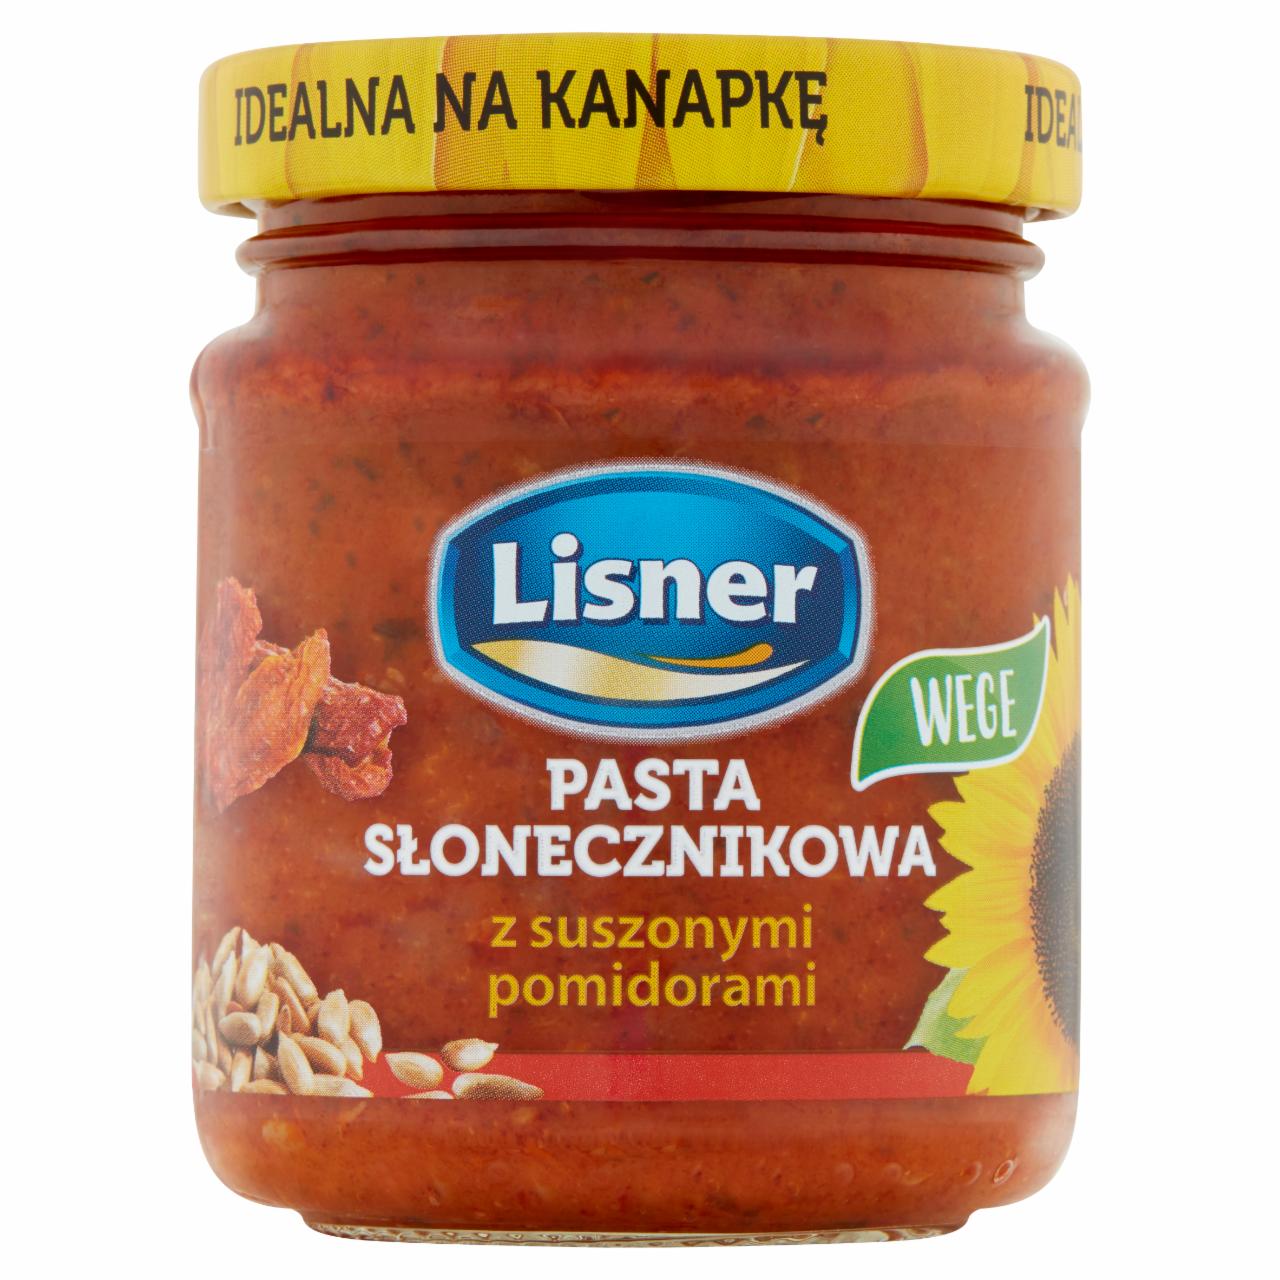 Zdjęcia - Lisner Pasta słonecznikowa z suszonymi pomidorami 110 g